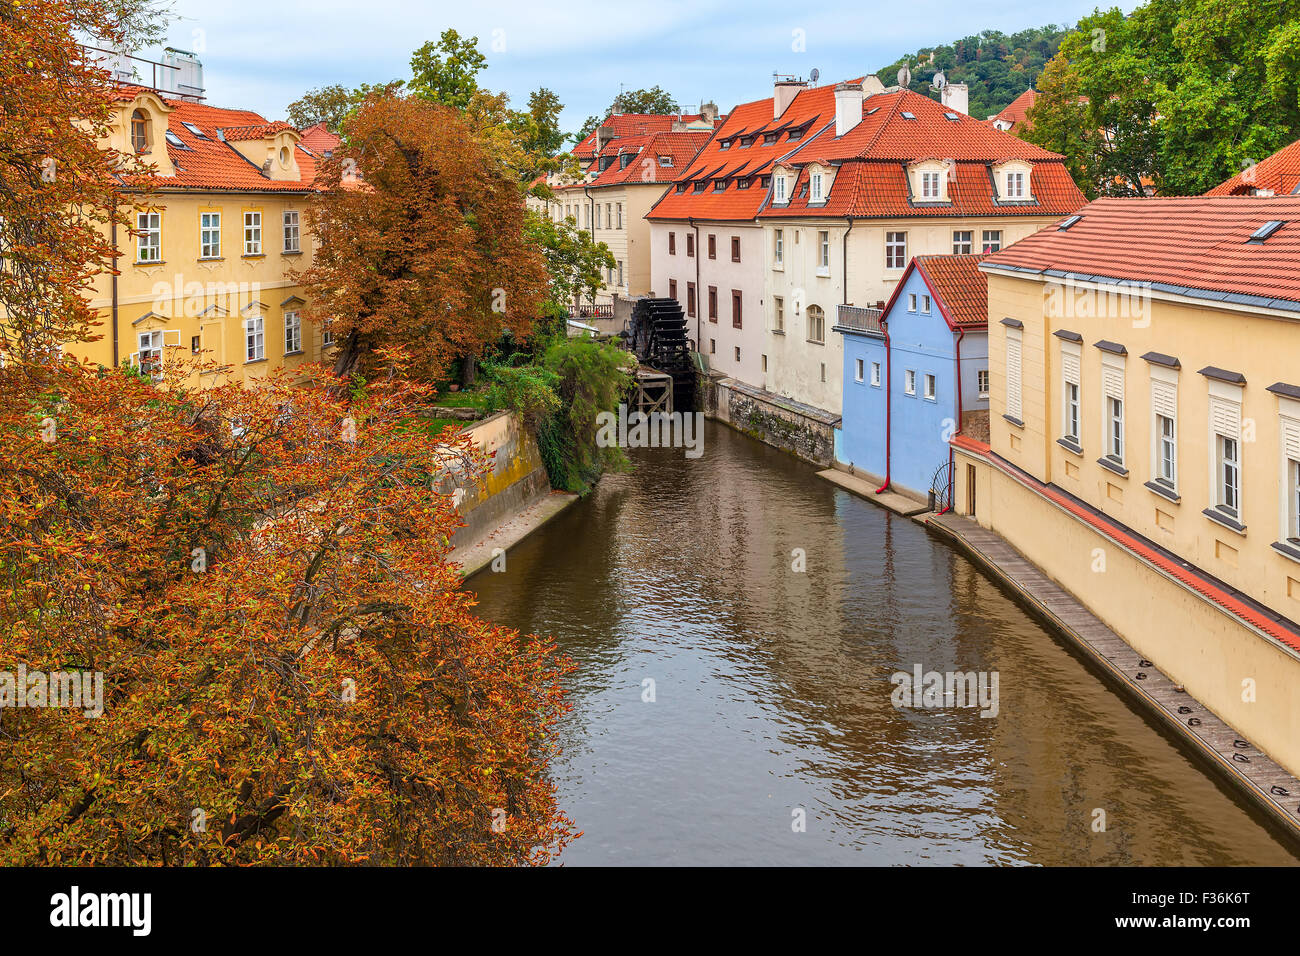 Schmalen Kanal zwischen bunten Häusern mit roten Dächern und herbstliche Bäume in Prag, Tschechien. Stockfoto